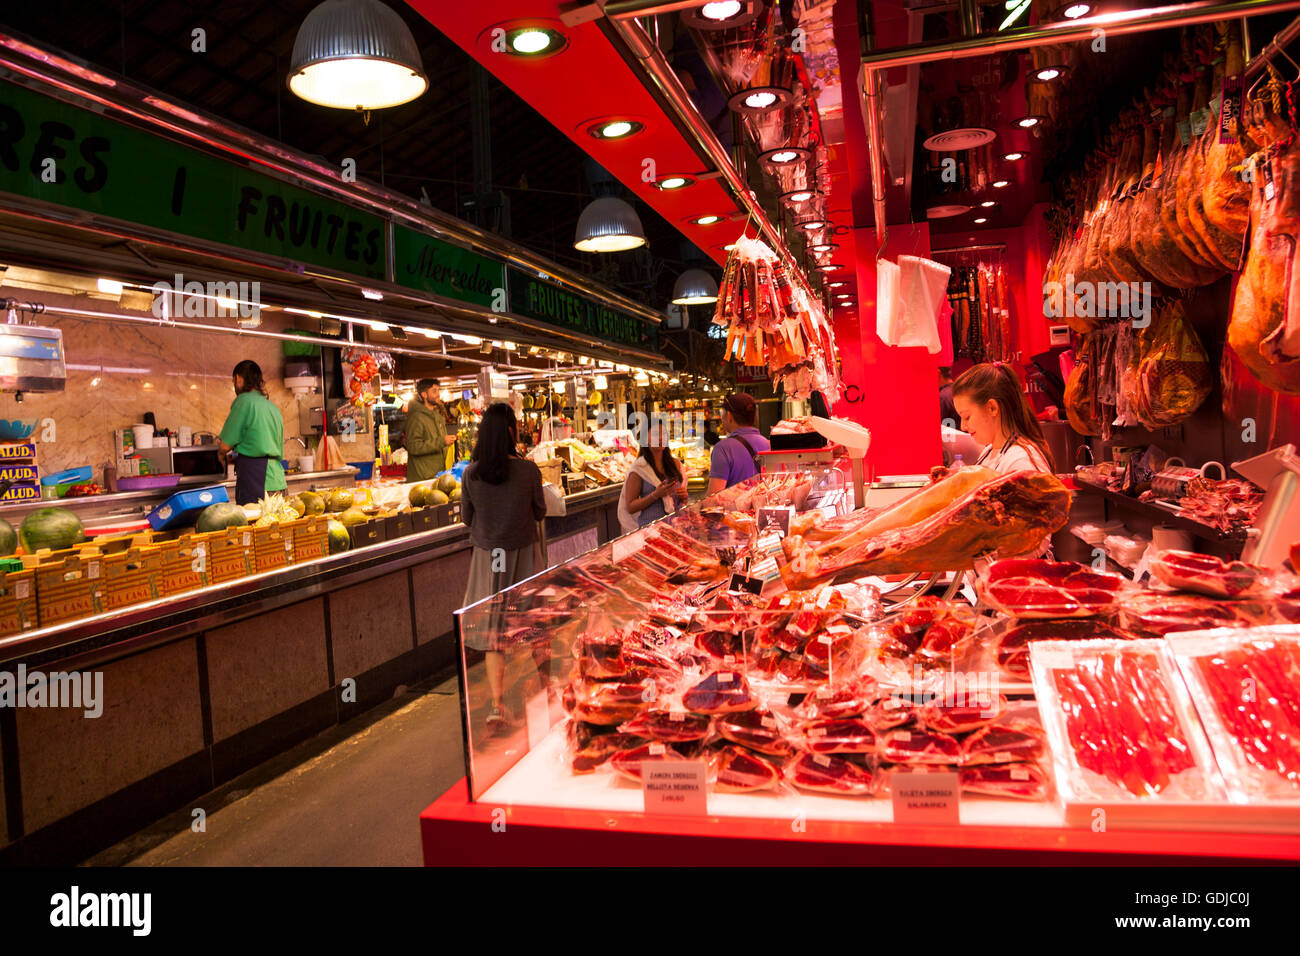 Iberian ham stall at La Boqueria Market in Barcelona, Spain Stock Photo